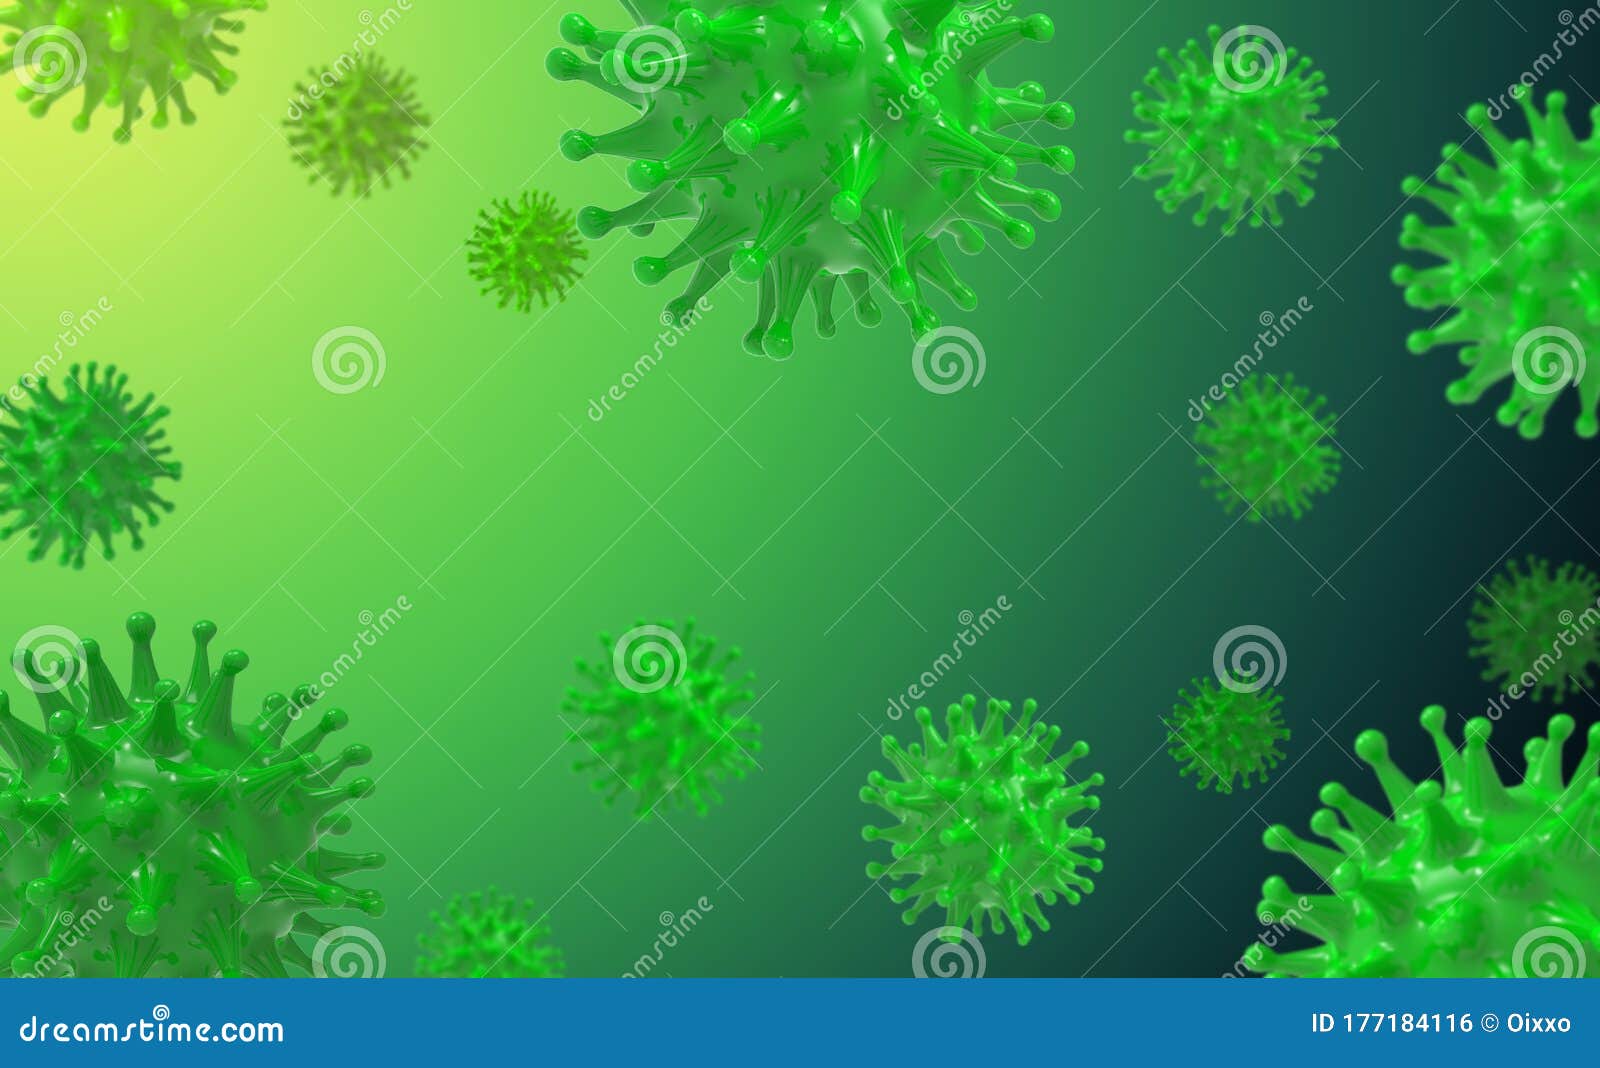 Микроб на зелёном фоне. Вирус зеленый. Зеленые вирусы на прозрачном фоне. Вирус гриппа макет для презентации. Richard virus